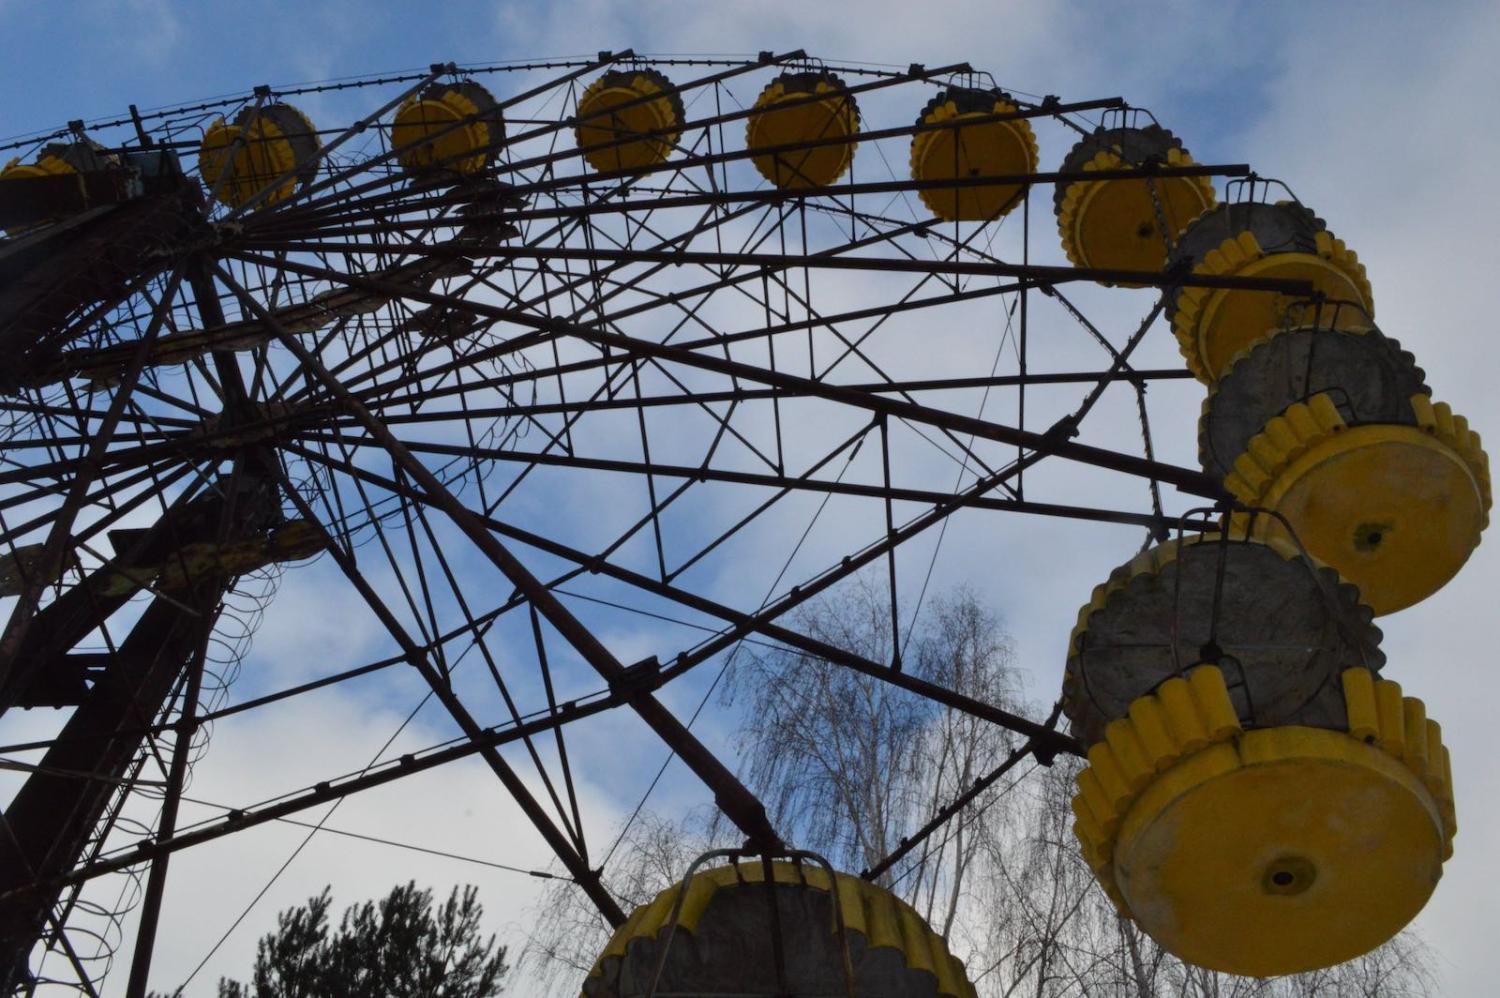 The abandoned fairground at Chernobyl (Photo: Ian Bancroft/Flickr)